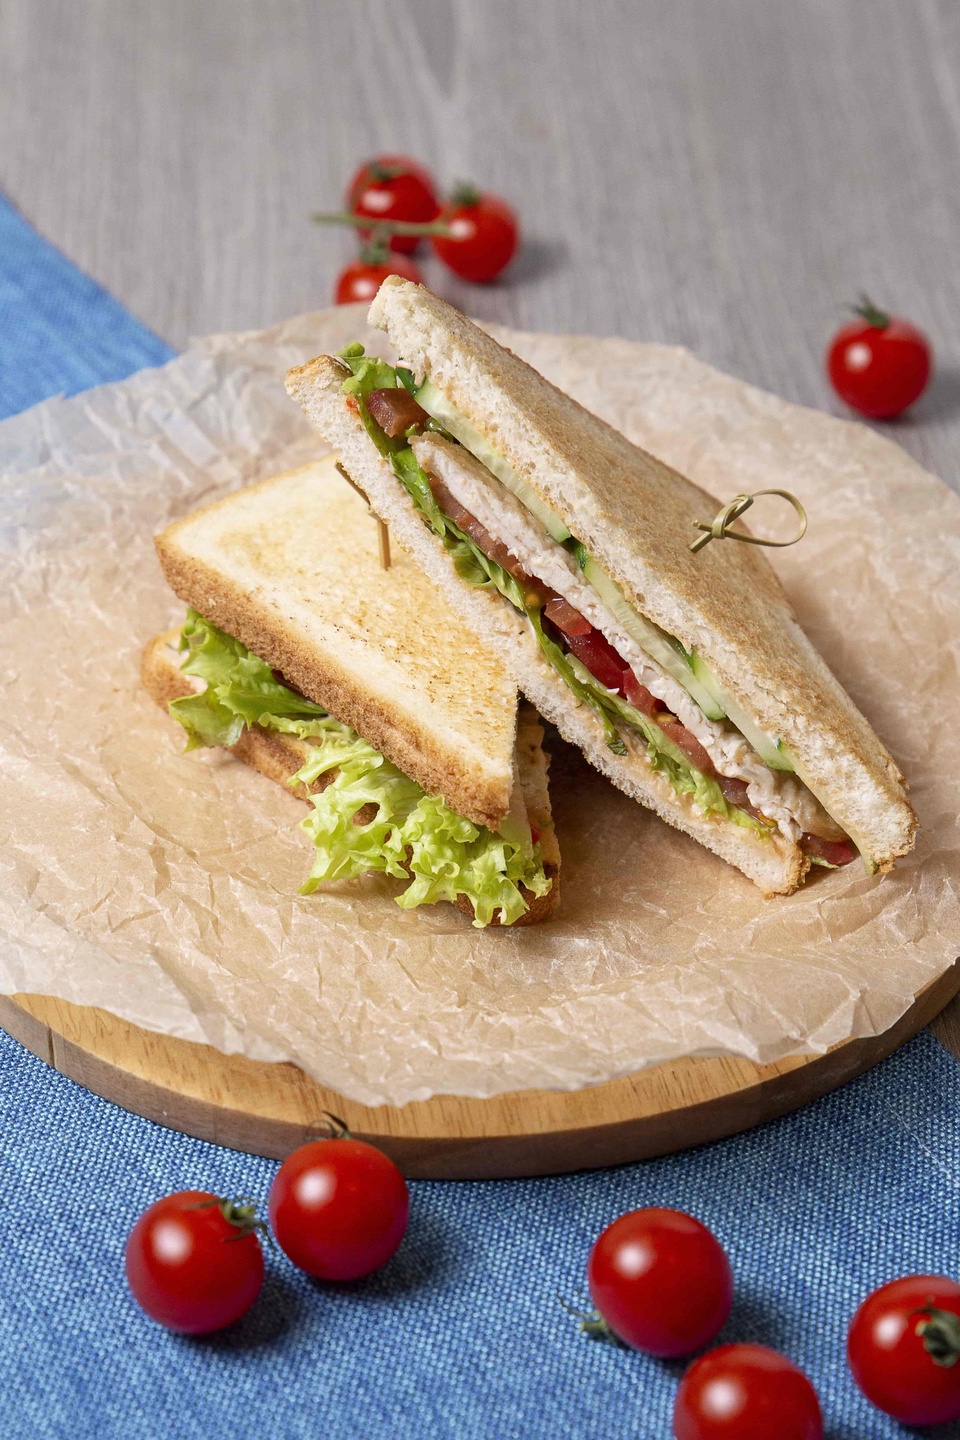 Клаб сендвич с курицей - 270 ₽, заказать онлайн.